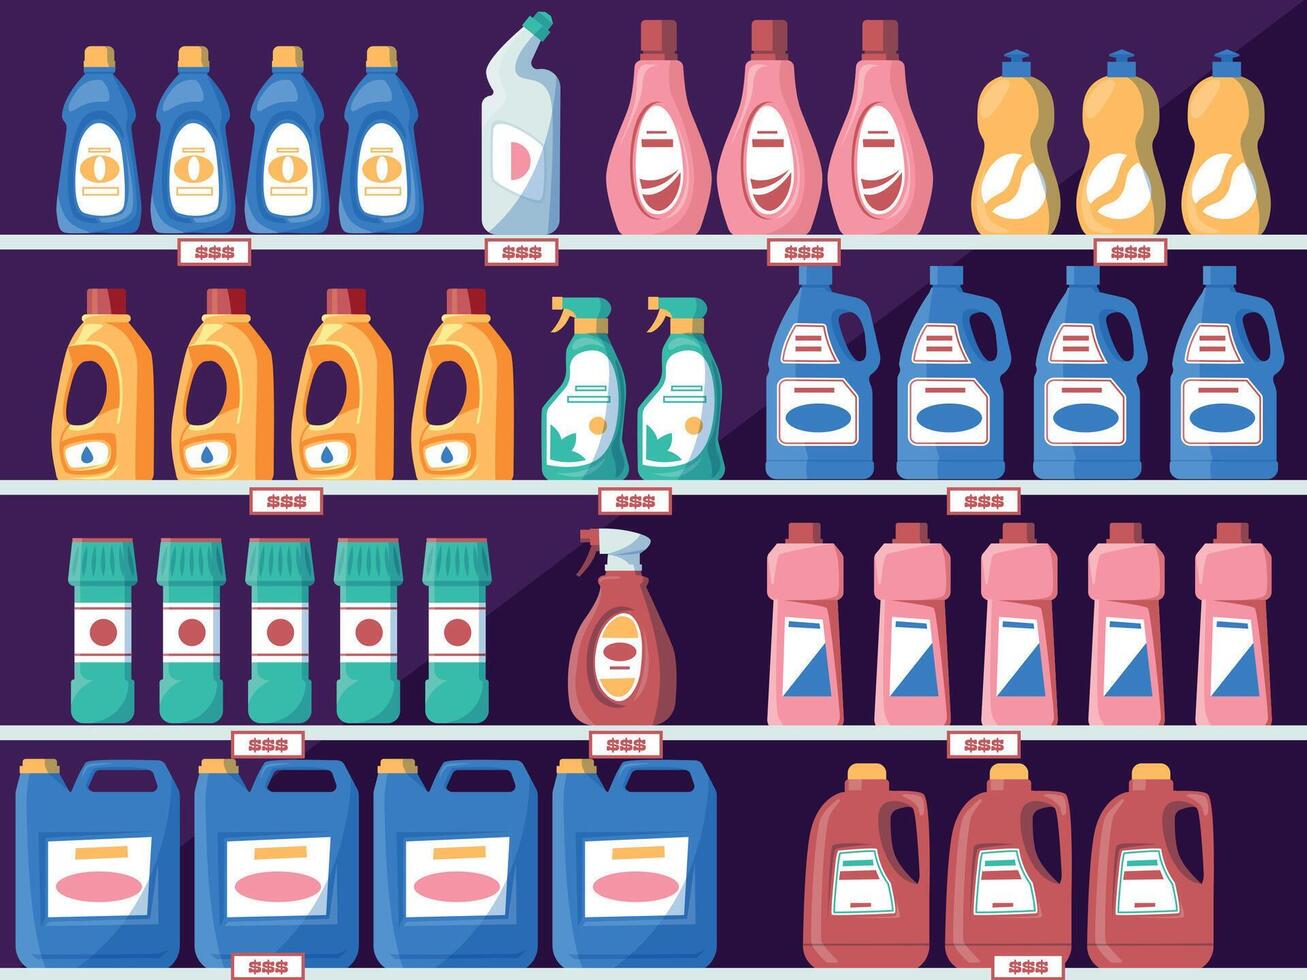 prateleiras com detergente garrafas. mercearia loja prateleiras com líquido Sabonete pó, família limpeza produtos. vetor supermercado conceito